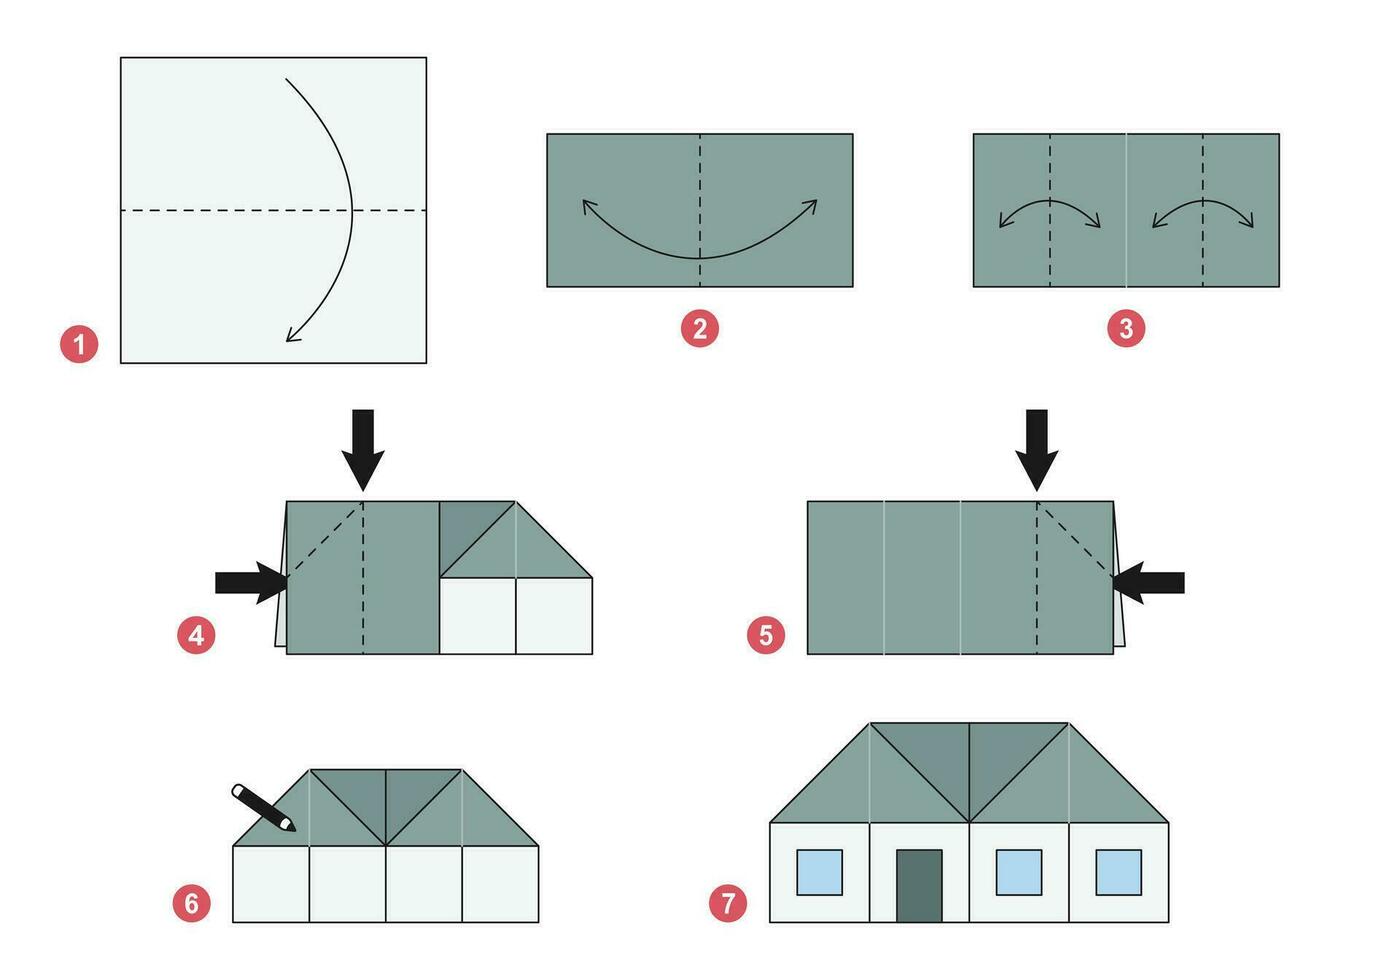 pequeño casa origami esquema tutorial Moviente modelo. origami para niños. paso por paso cómo a hacer un linda origami casa. vector ilustración.